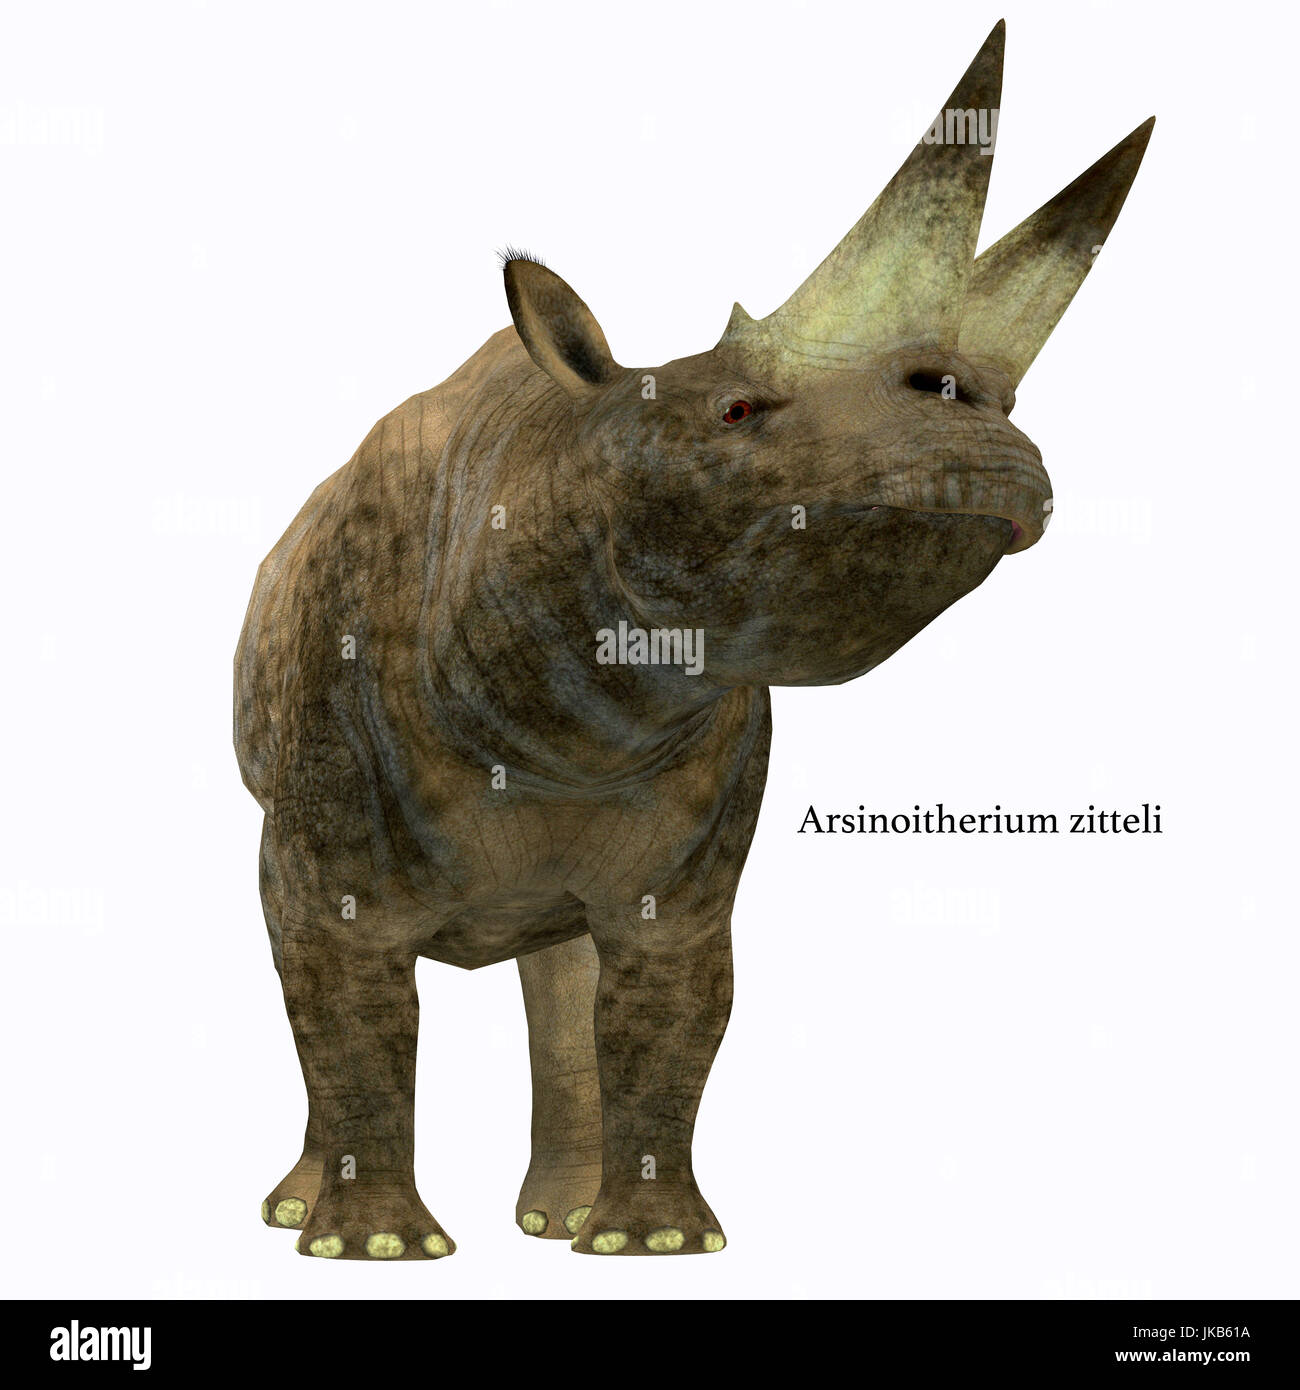 These war ein Pflanzenfresser Nashorn-ähnliches Säugetier, das im frühen Oligozän in Afrika gelebt. Stockfoto